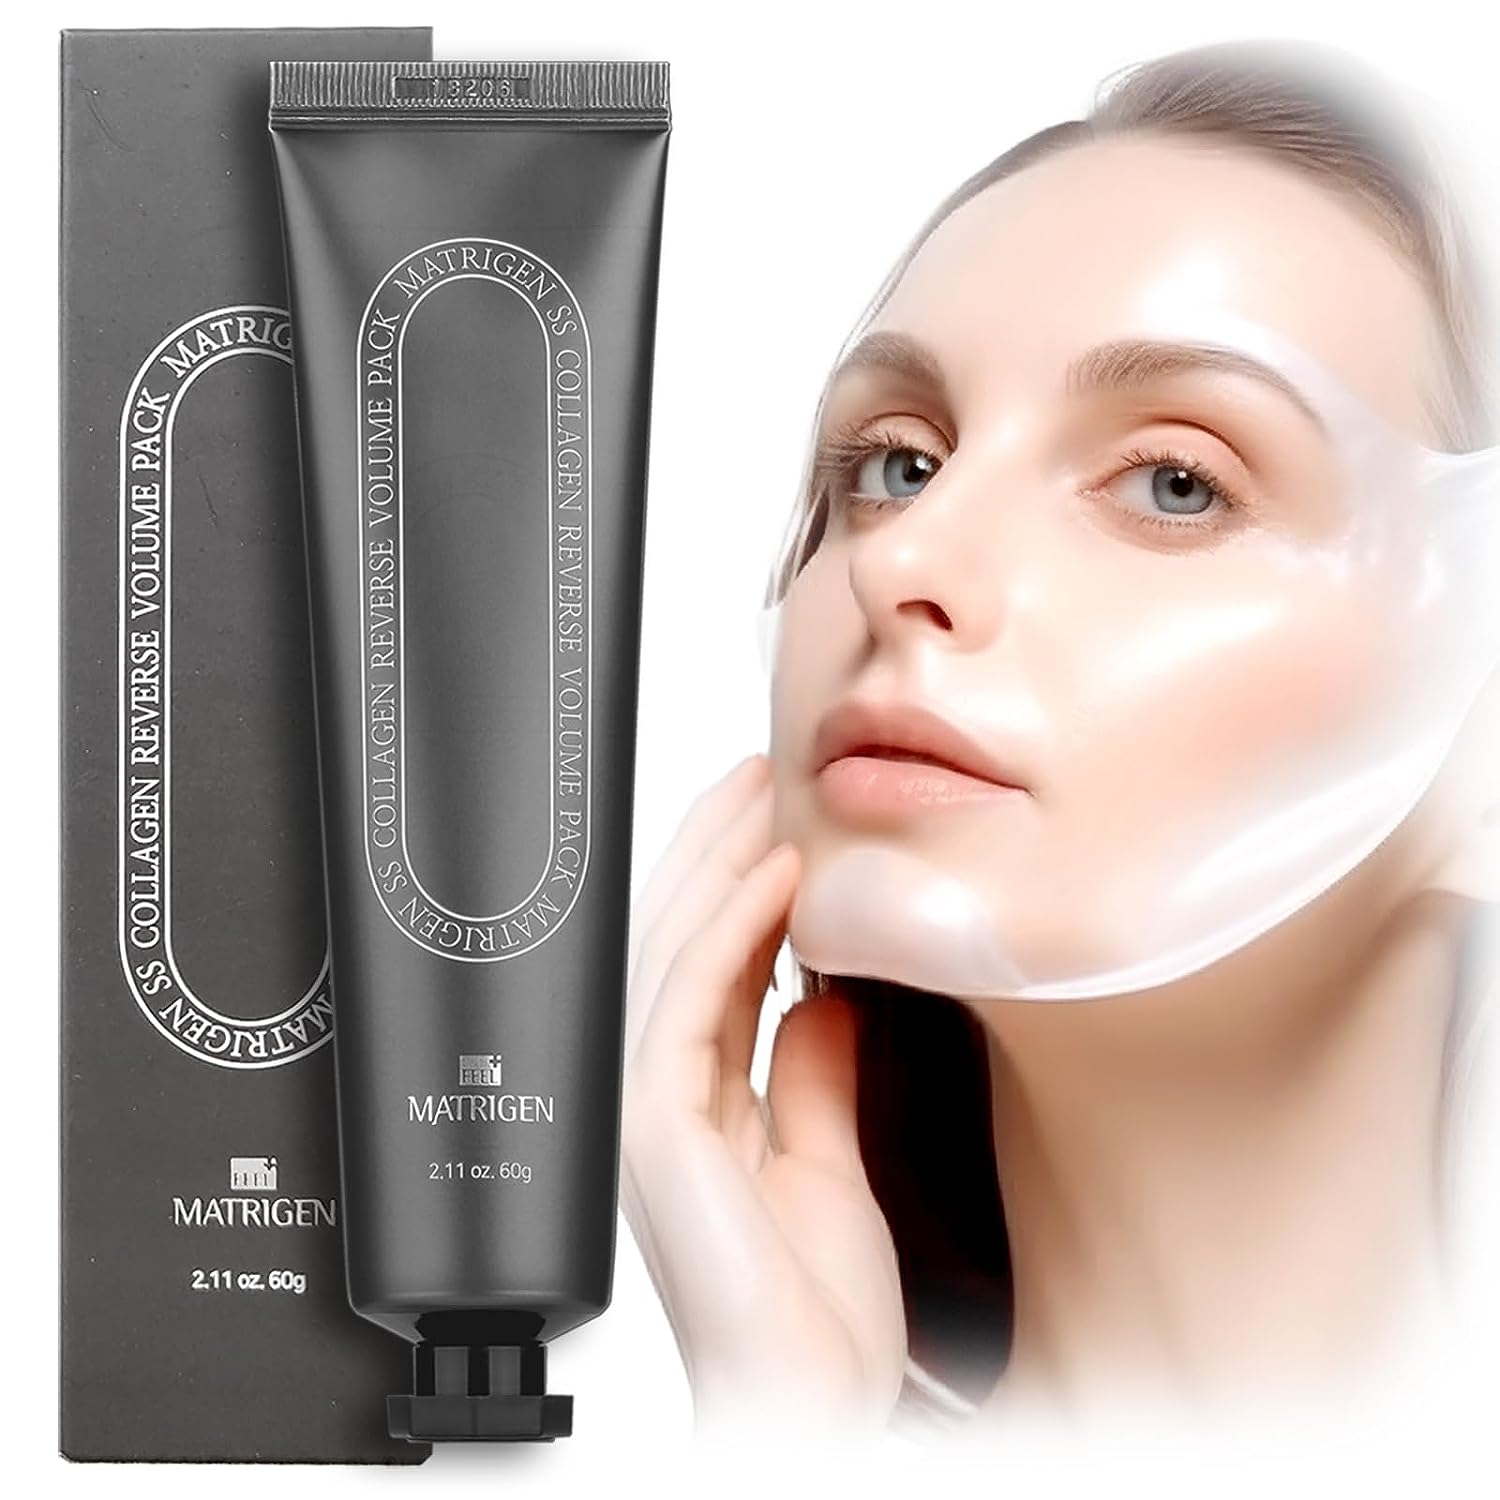 Matrigen SS Collagen Face Mask Review